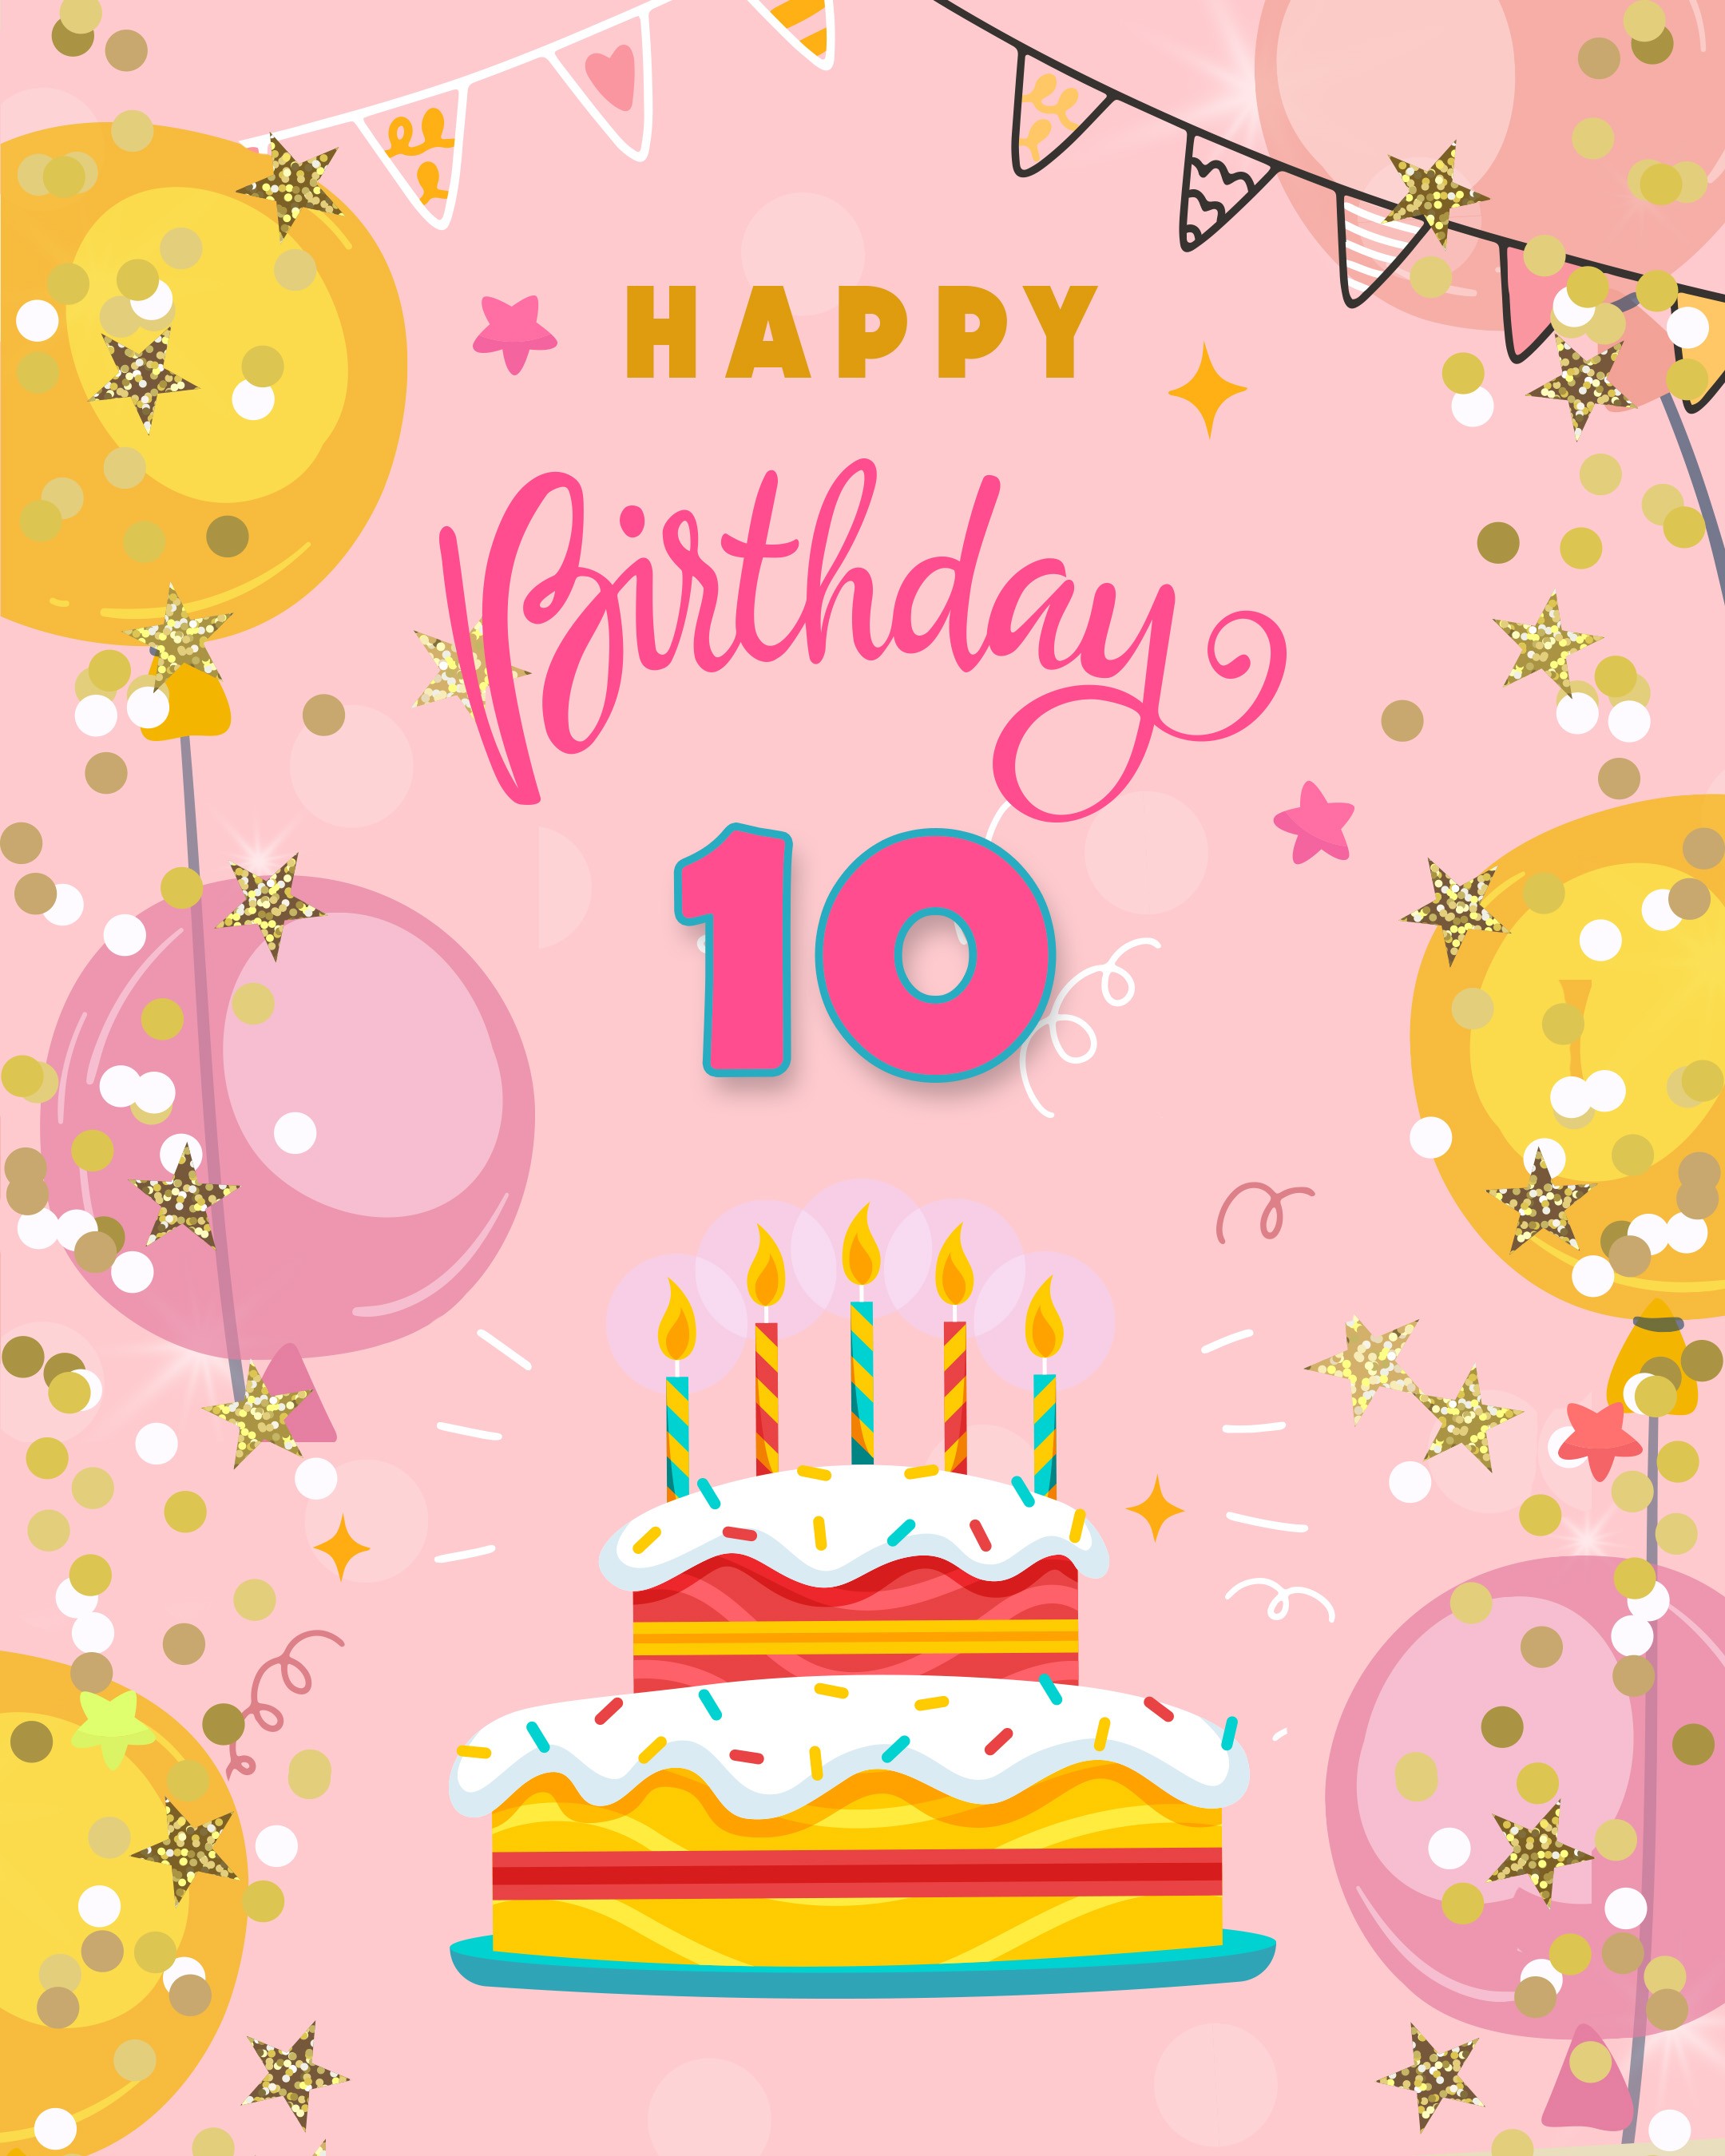 Free 10th Years Happy Birthday Image With Cake - birthdayimg.com